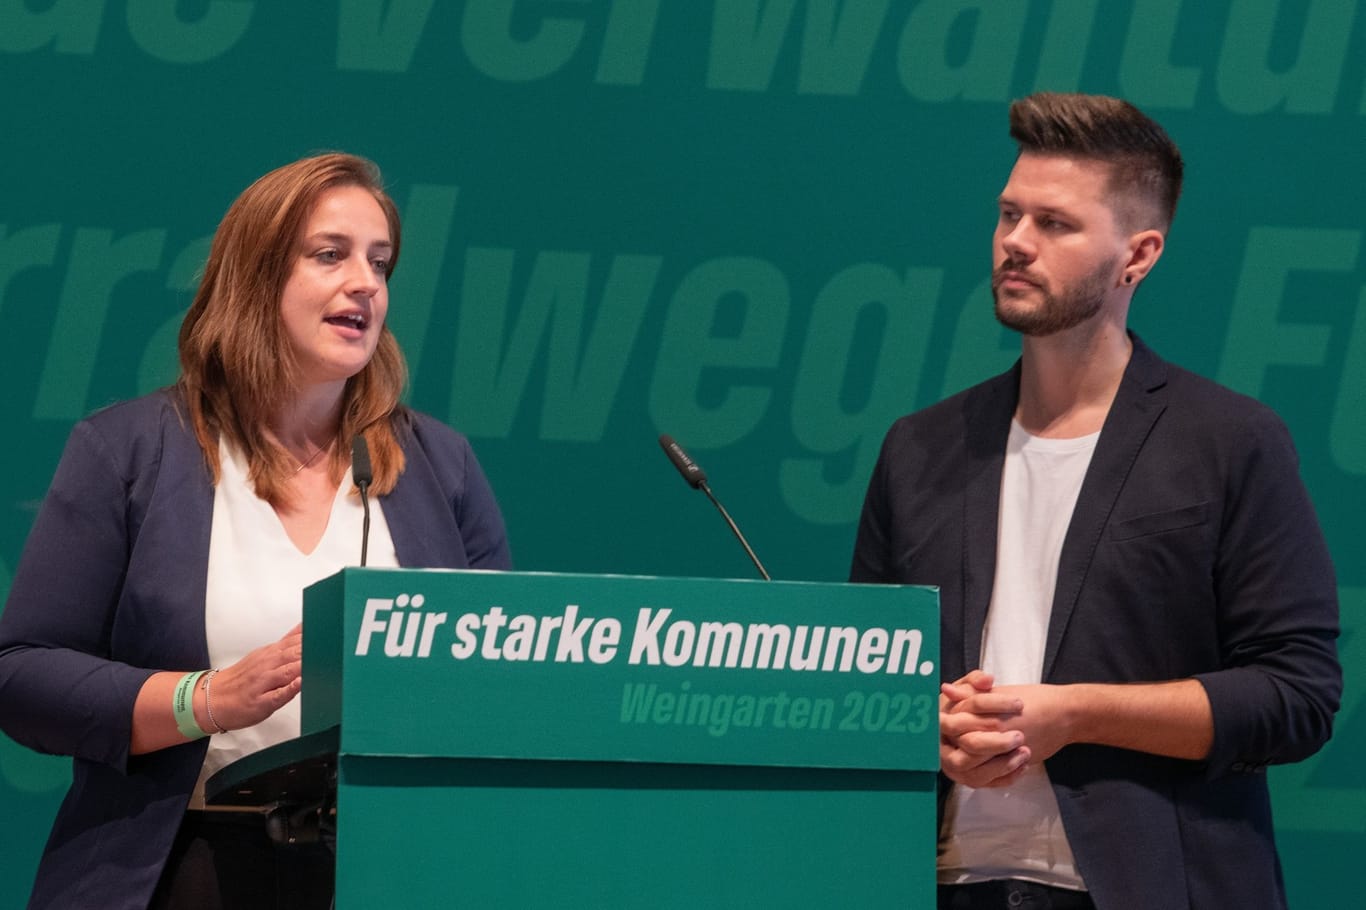 Landesdelegiertenkonferenz Bündnis 90/Die Grünen